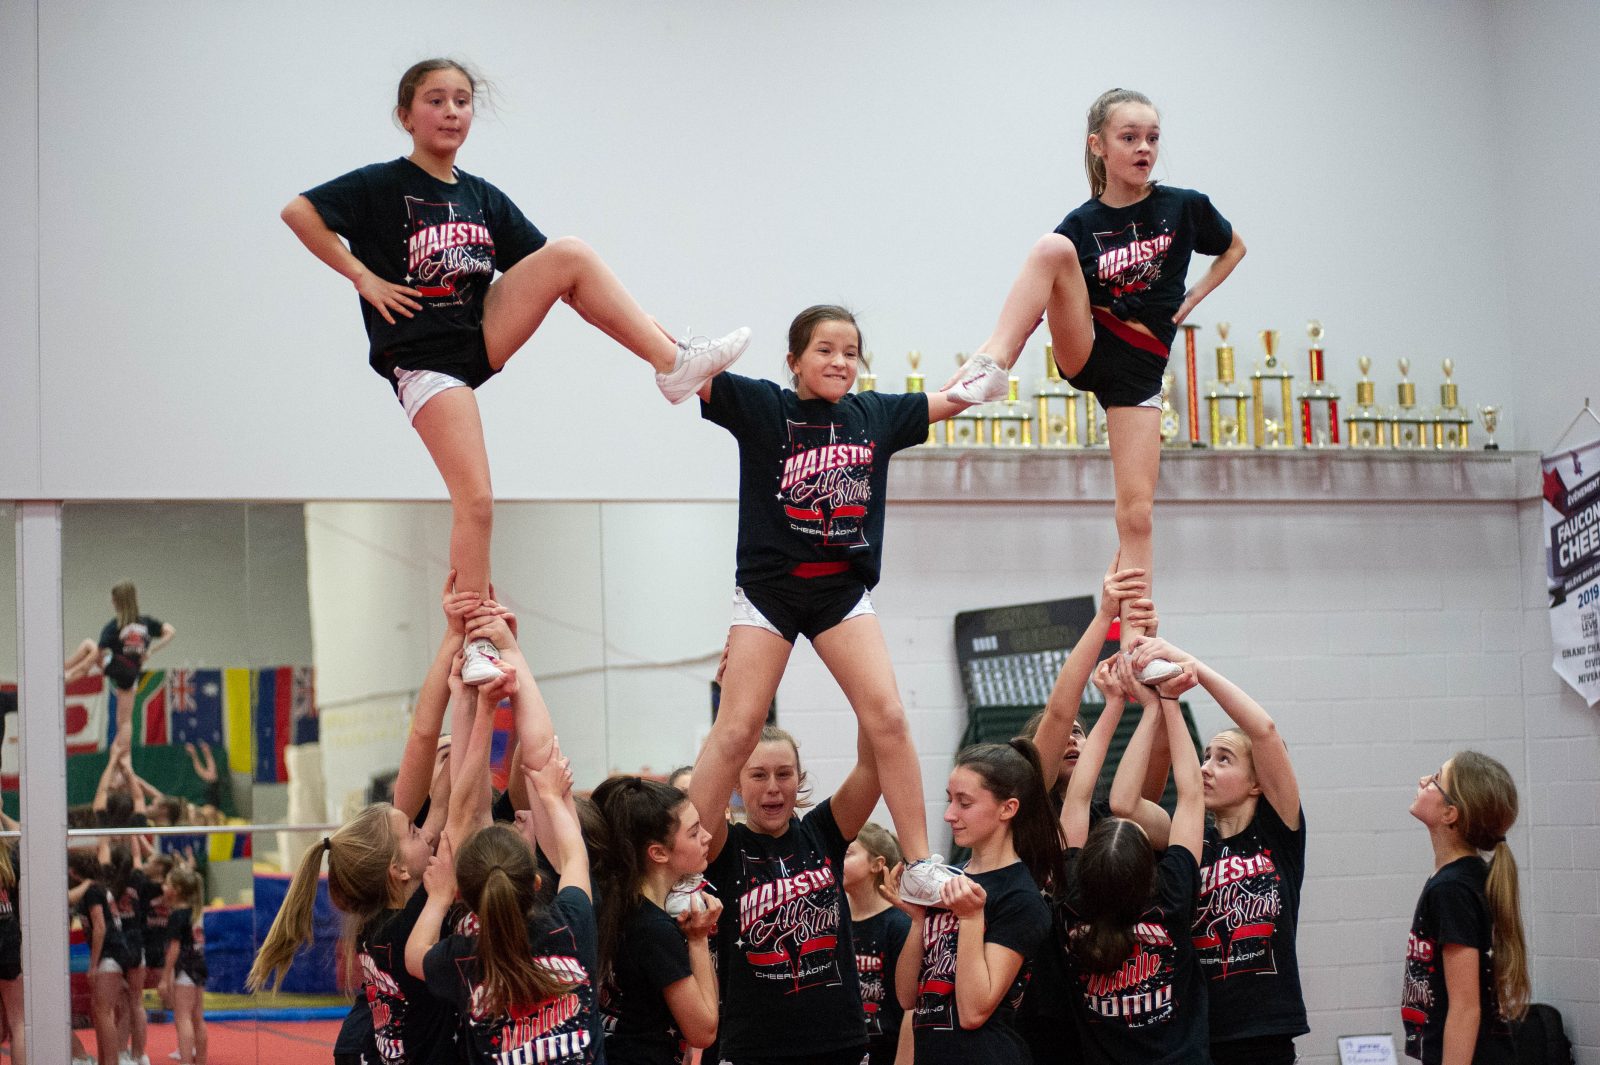 Le cheerleading, au-delà des stéréotypes - L'Express